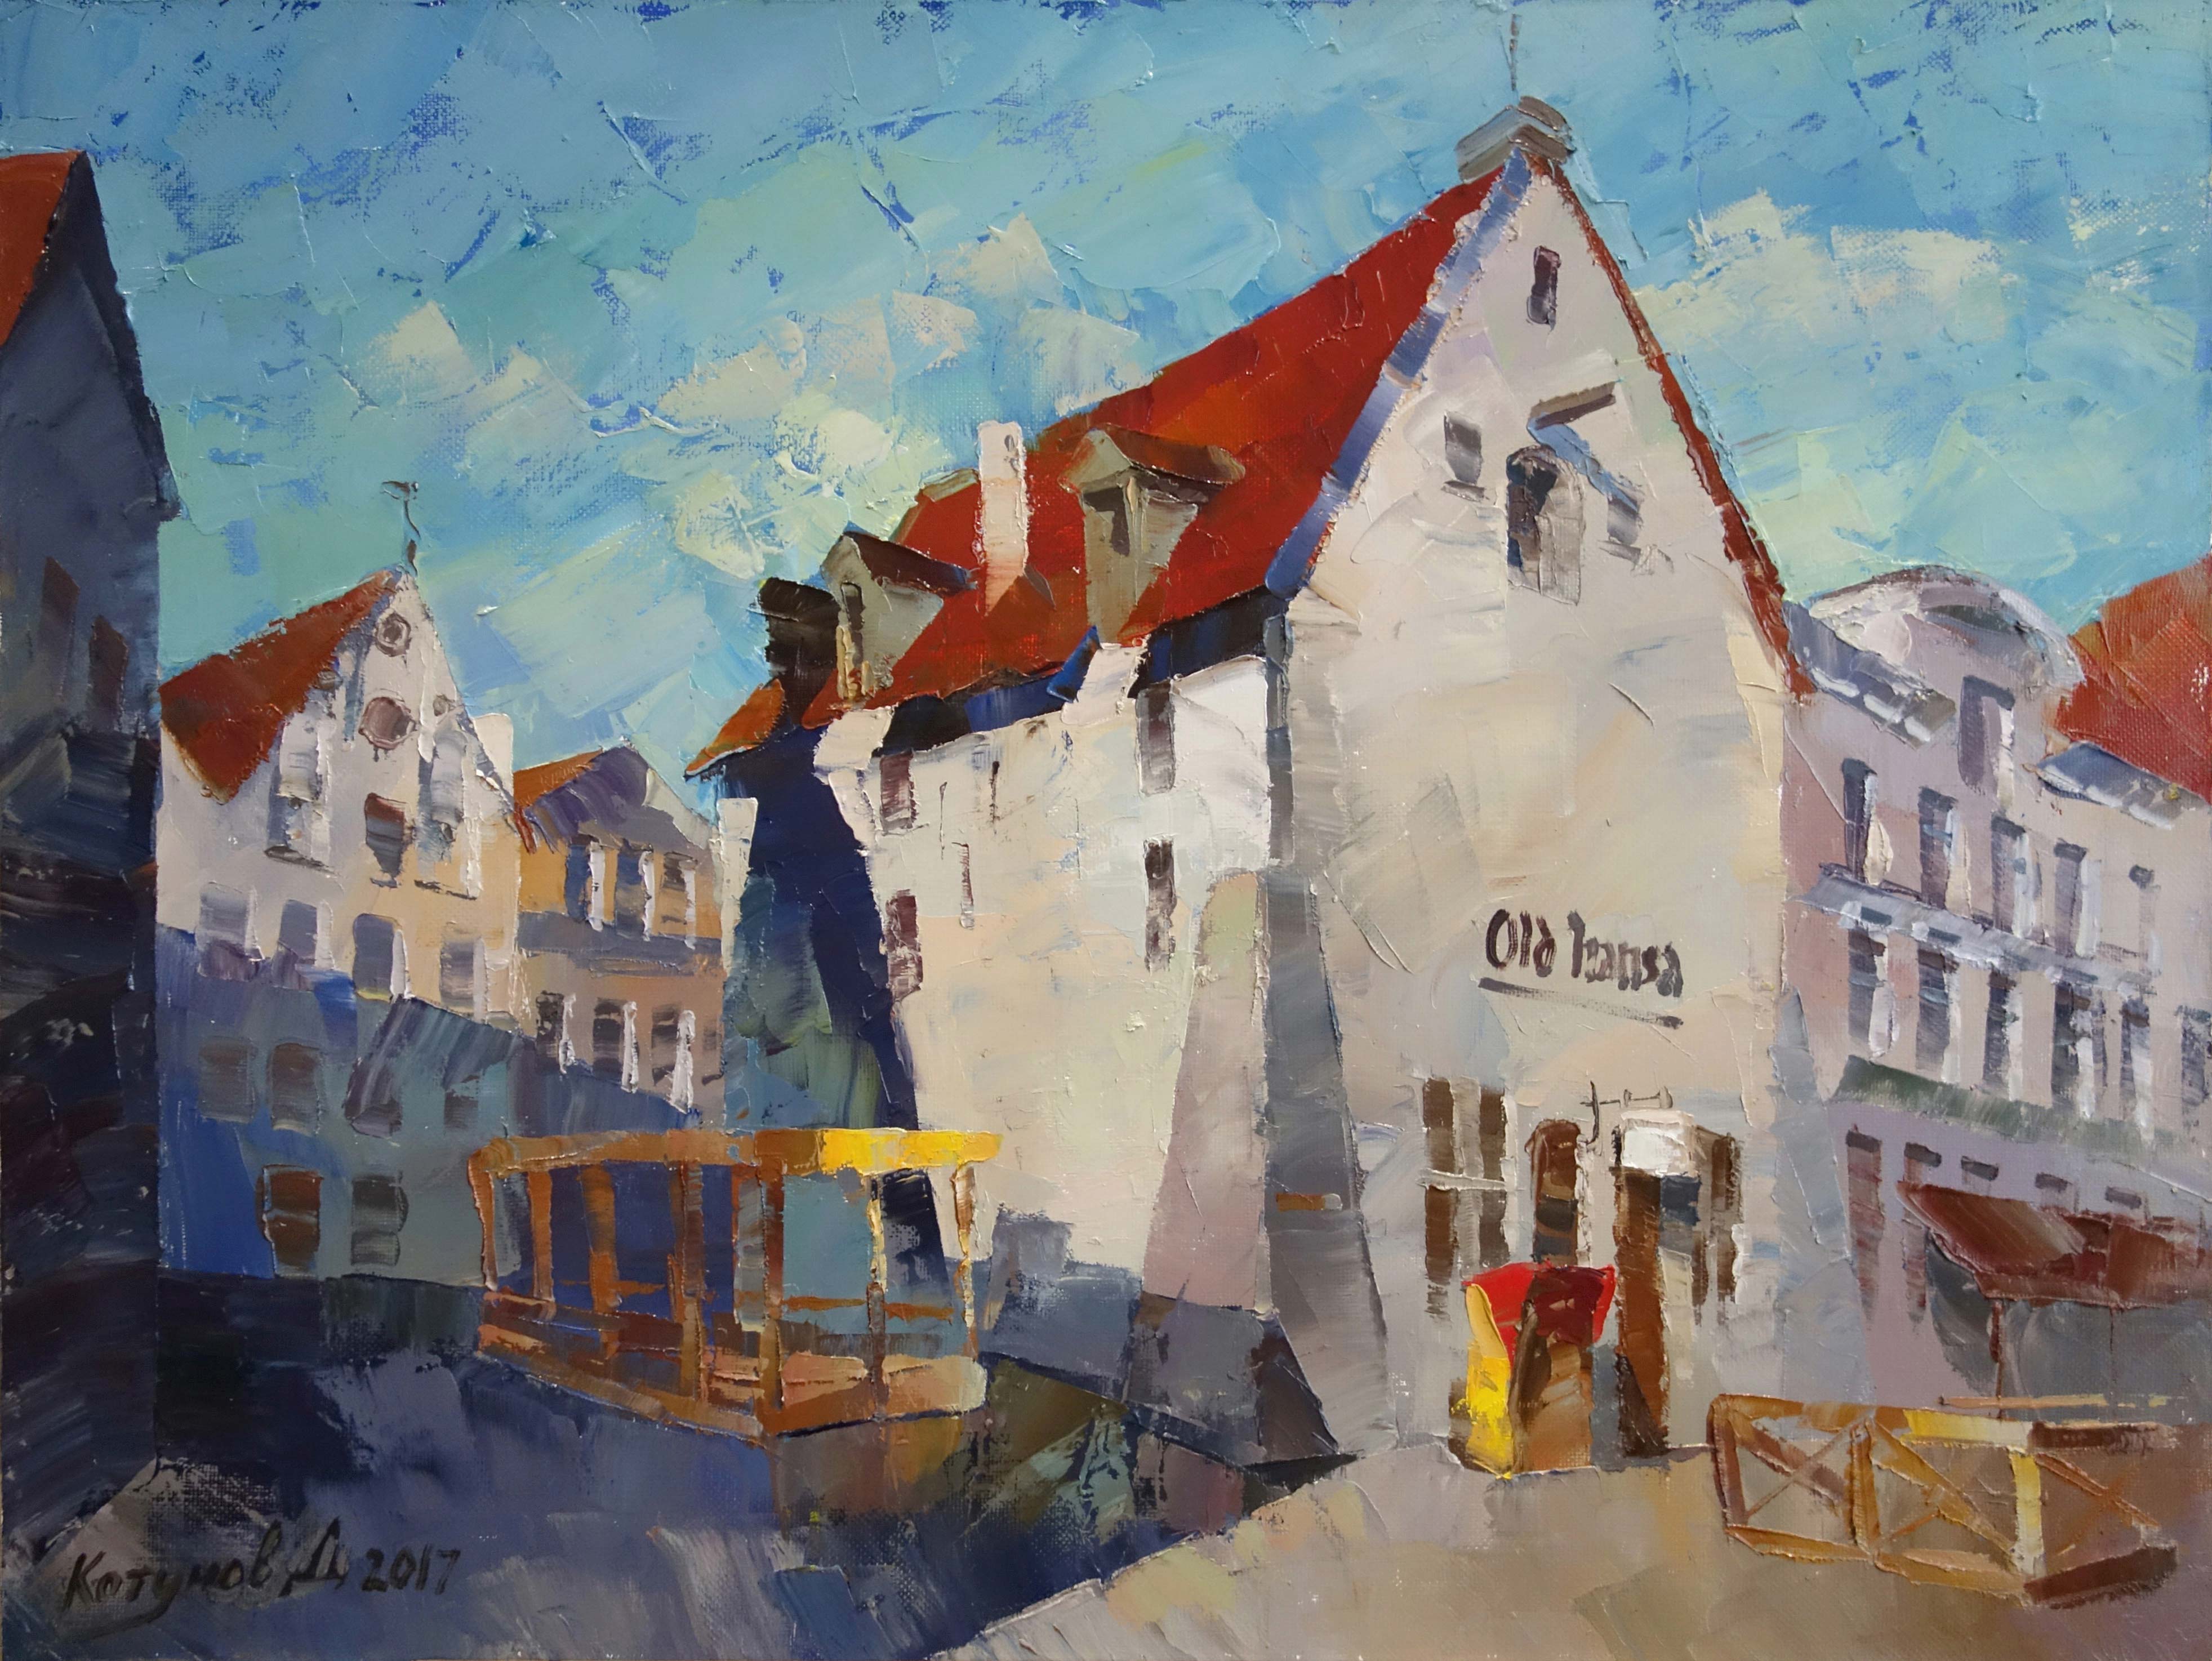 Tallinn. Early Morning - 1, Dmitry Kotunov, Buy the painting Oil